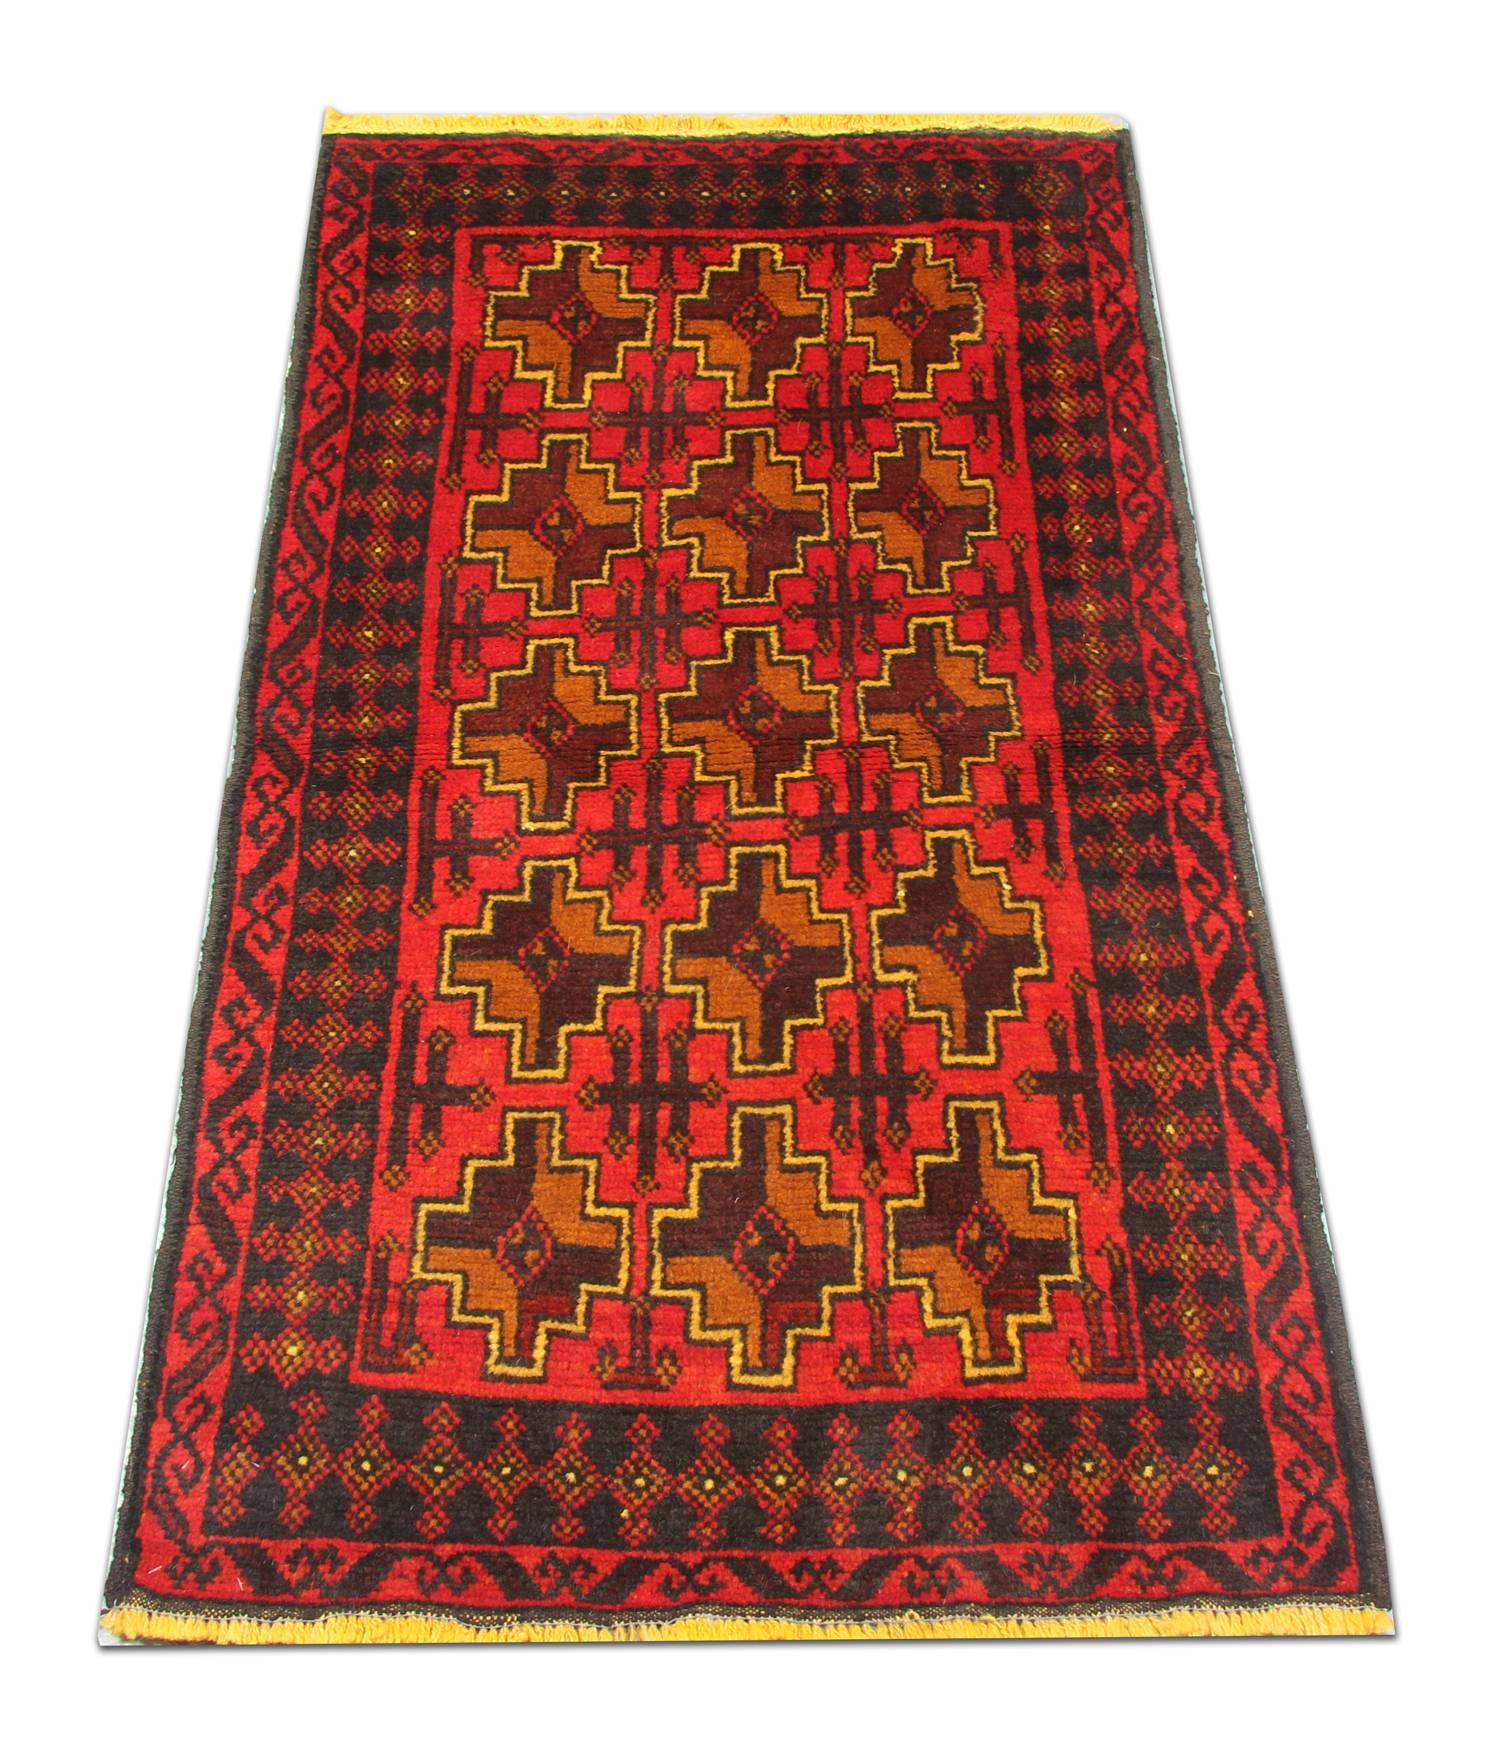 Dieser elegante handgewebte Teppich besteht aus einem zentralen Allover-Muster mit einfachen, asymmetrisch gewebten Medaillons. Es hat einen roten Hintergrund und senf- und braunfarbene Akzente, die die geometrischen Motive bilden. Dies wird dann